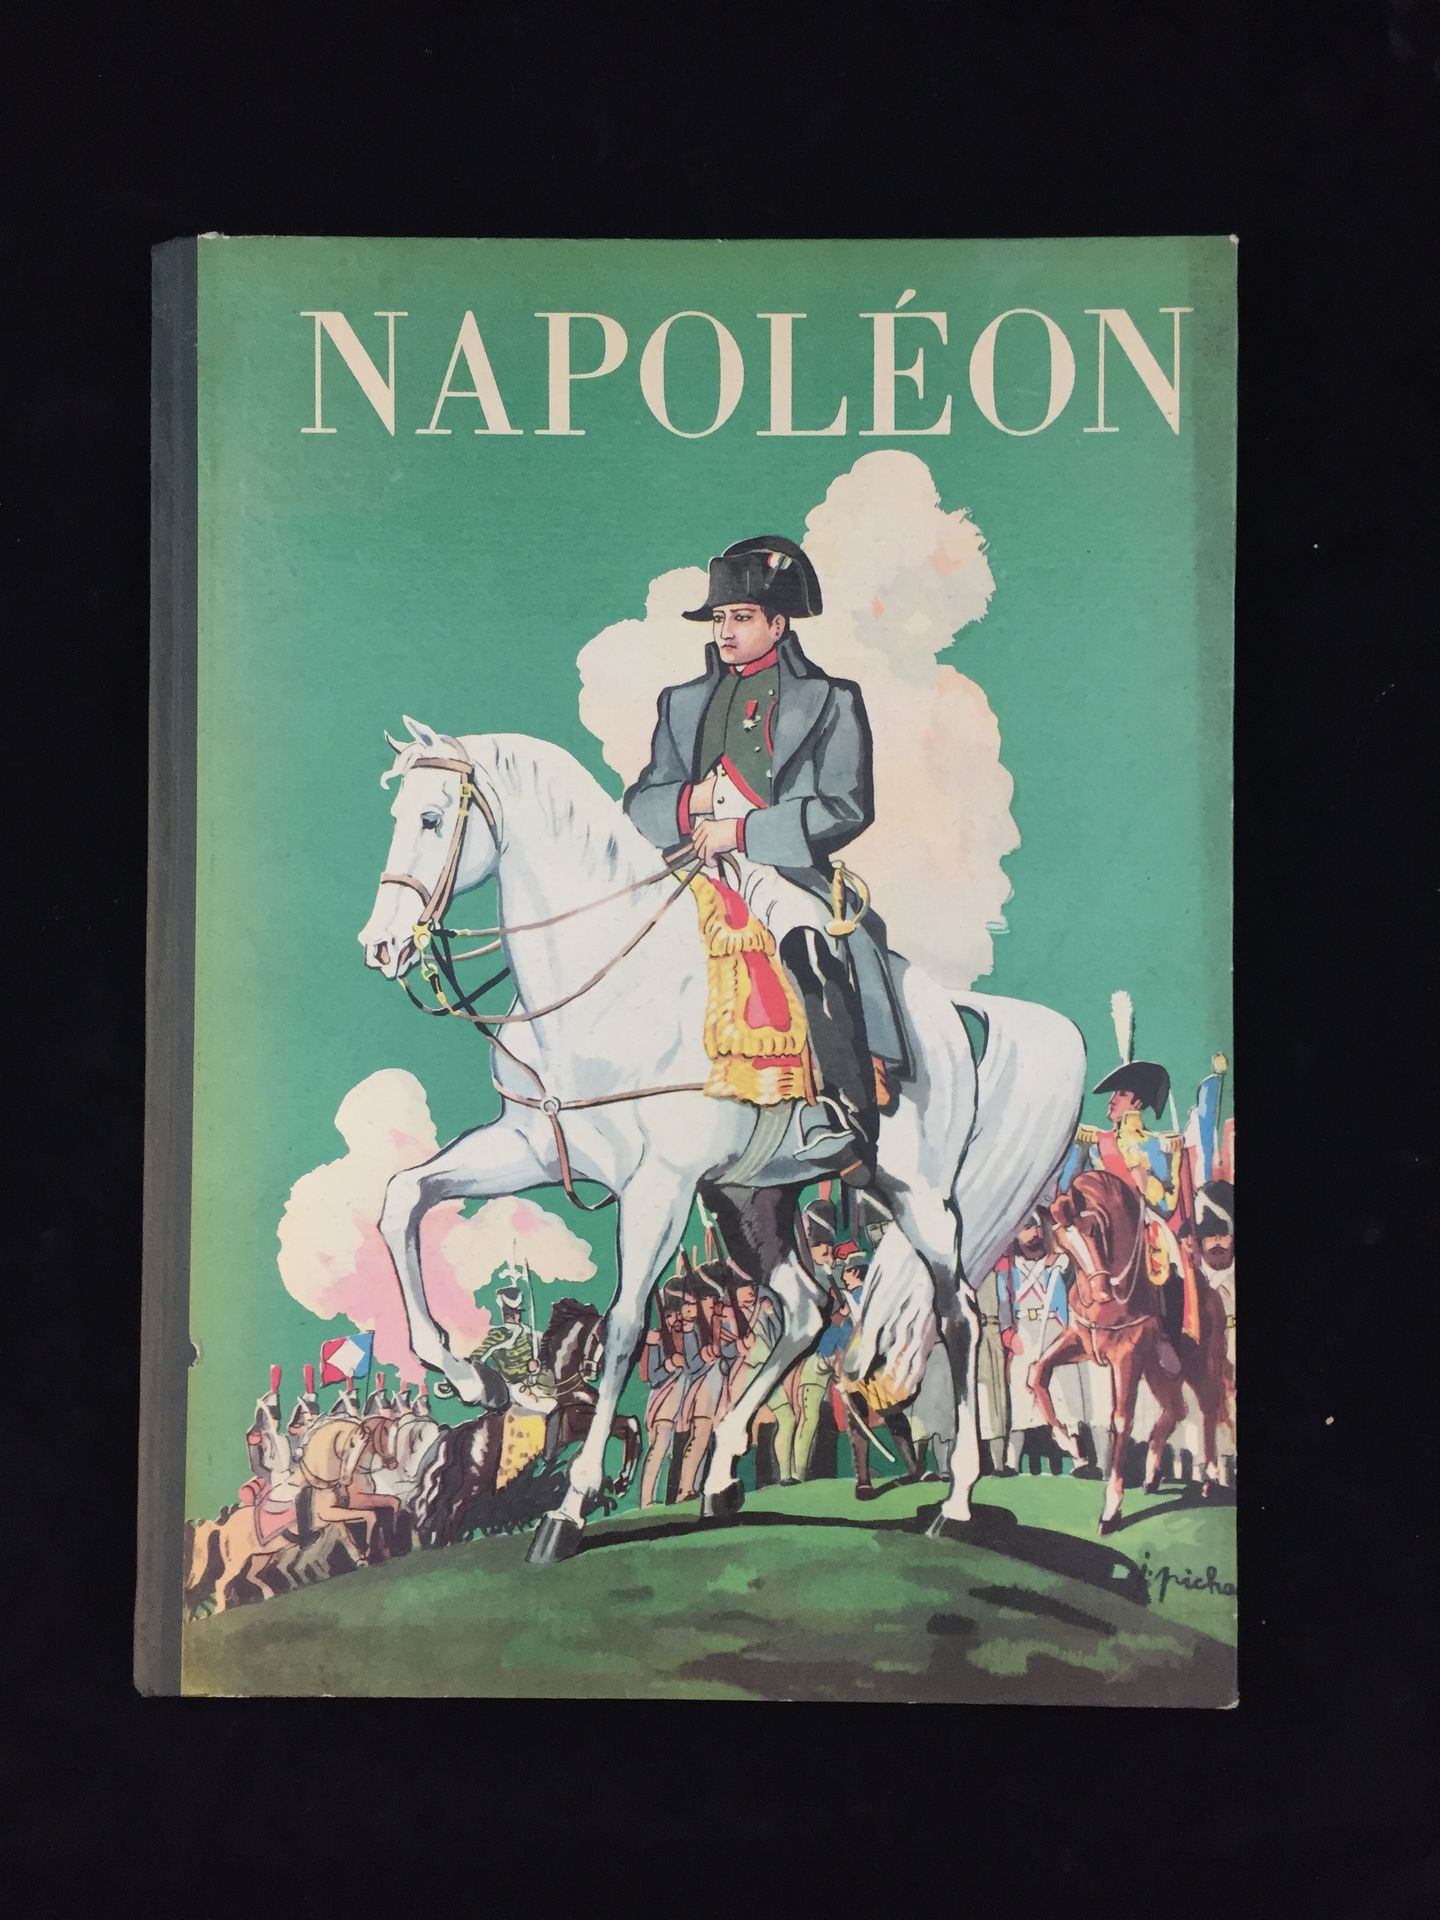 Null BURNAND（Jean-Jacques PICHARD的插图），《拿破仑》，Gründ书店，巴黎。大型精装本，共4册。一个精美的副本。